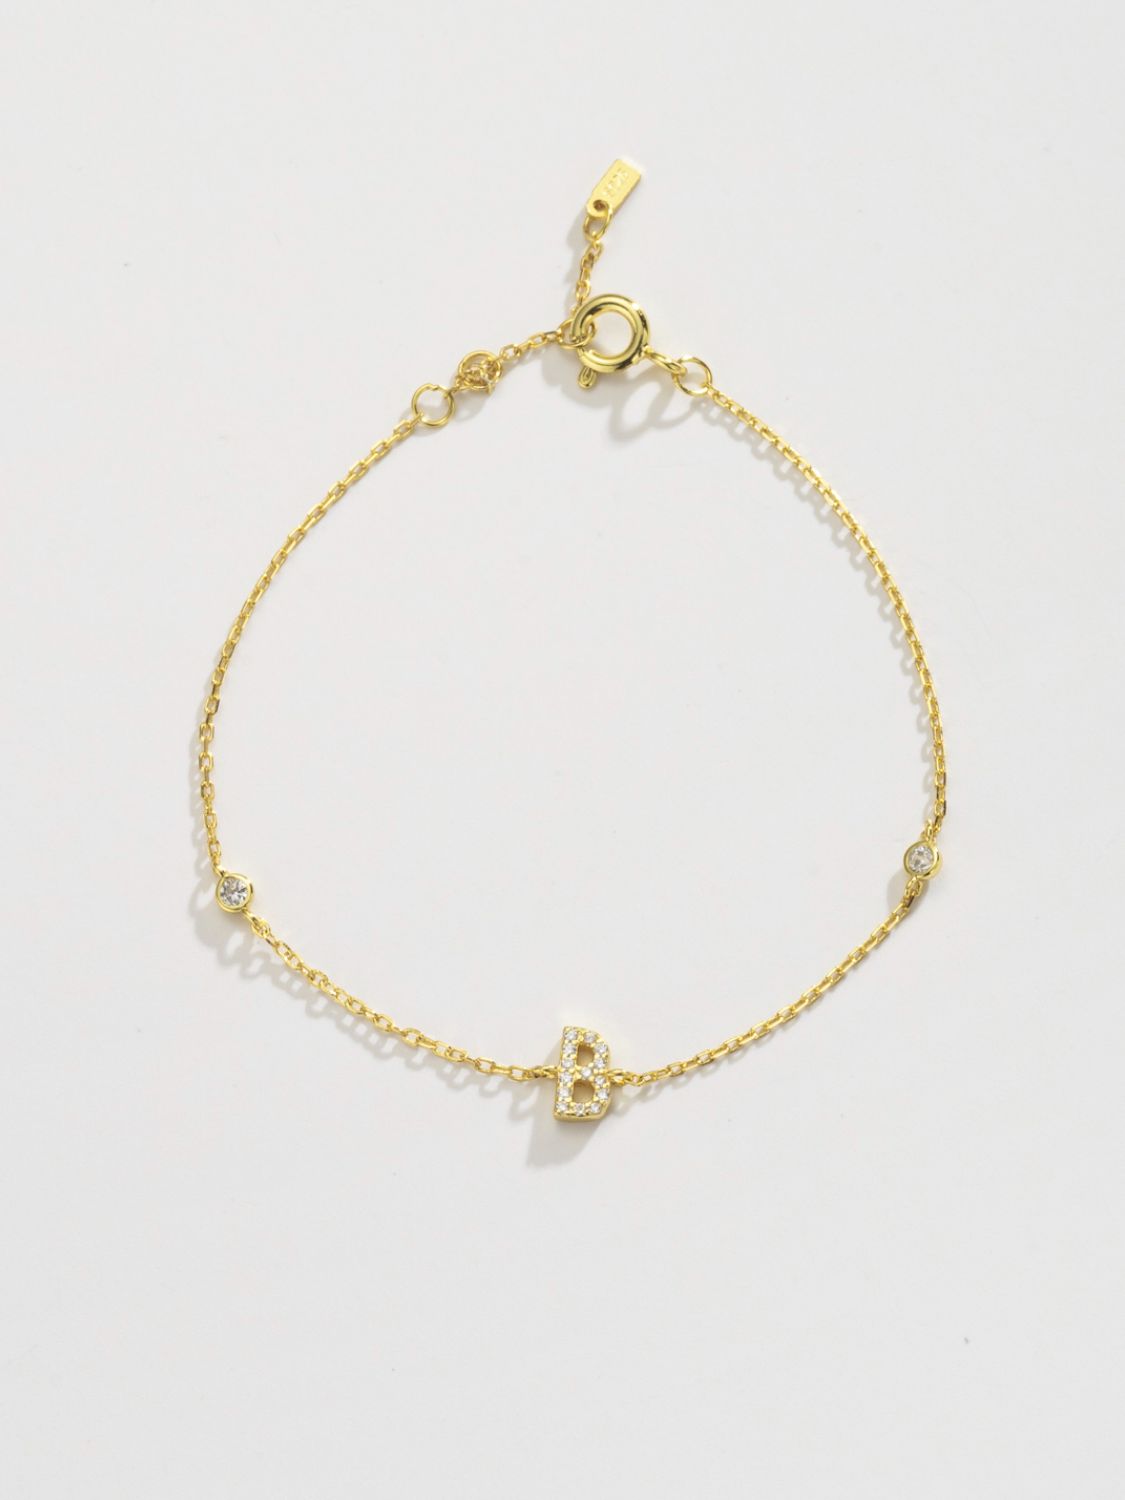 A To F Zircon 925 Sterling Silver Bracelet - Women’s Jewelry - Bracelets - 8 - 2024